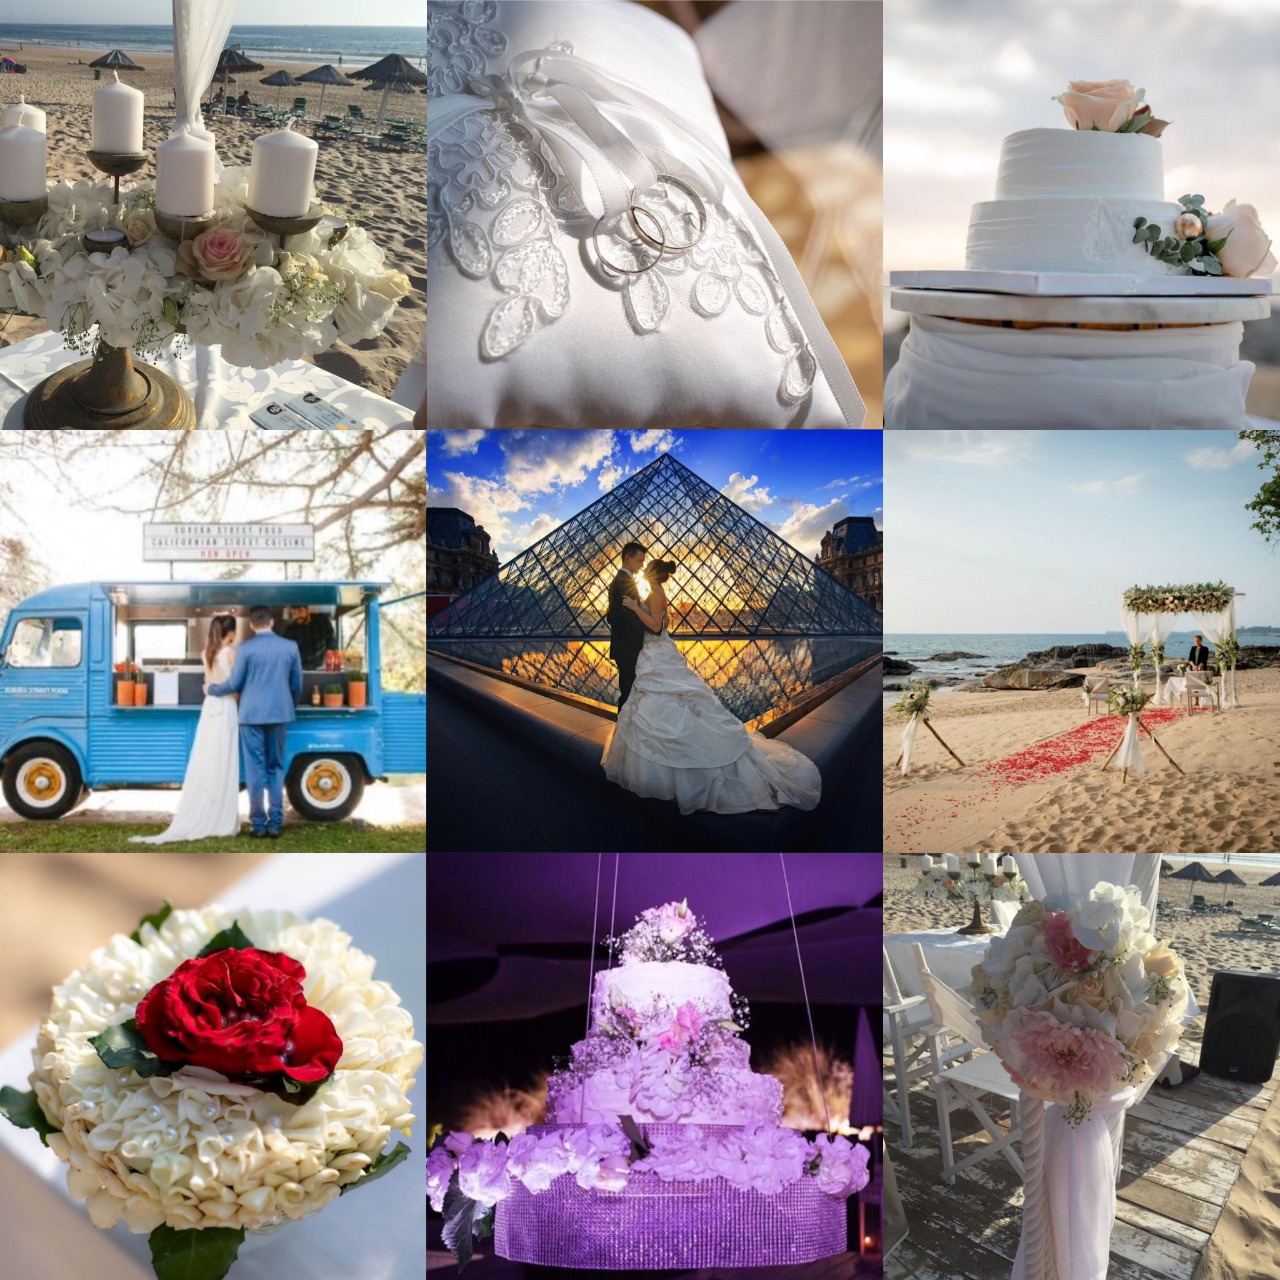 Dream weddings with PromotersEU.com + LaScalaEVENT.COM + BestPartyPrague.com, it will be a breeze...